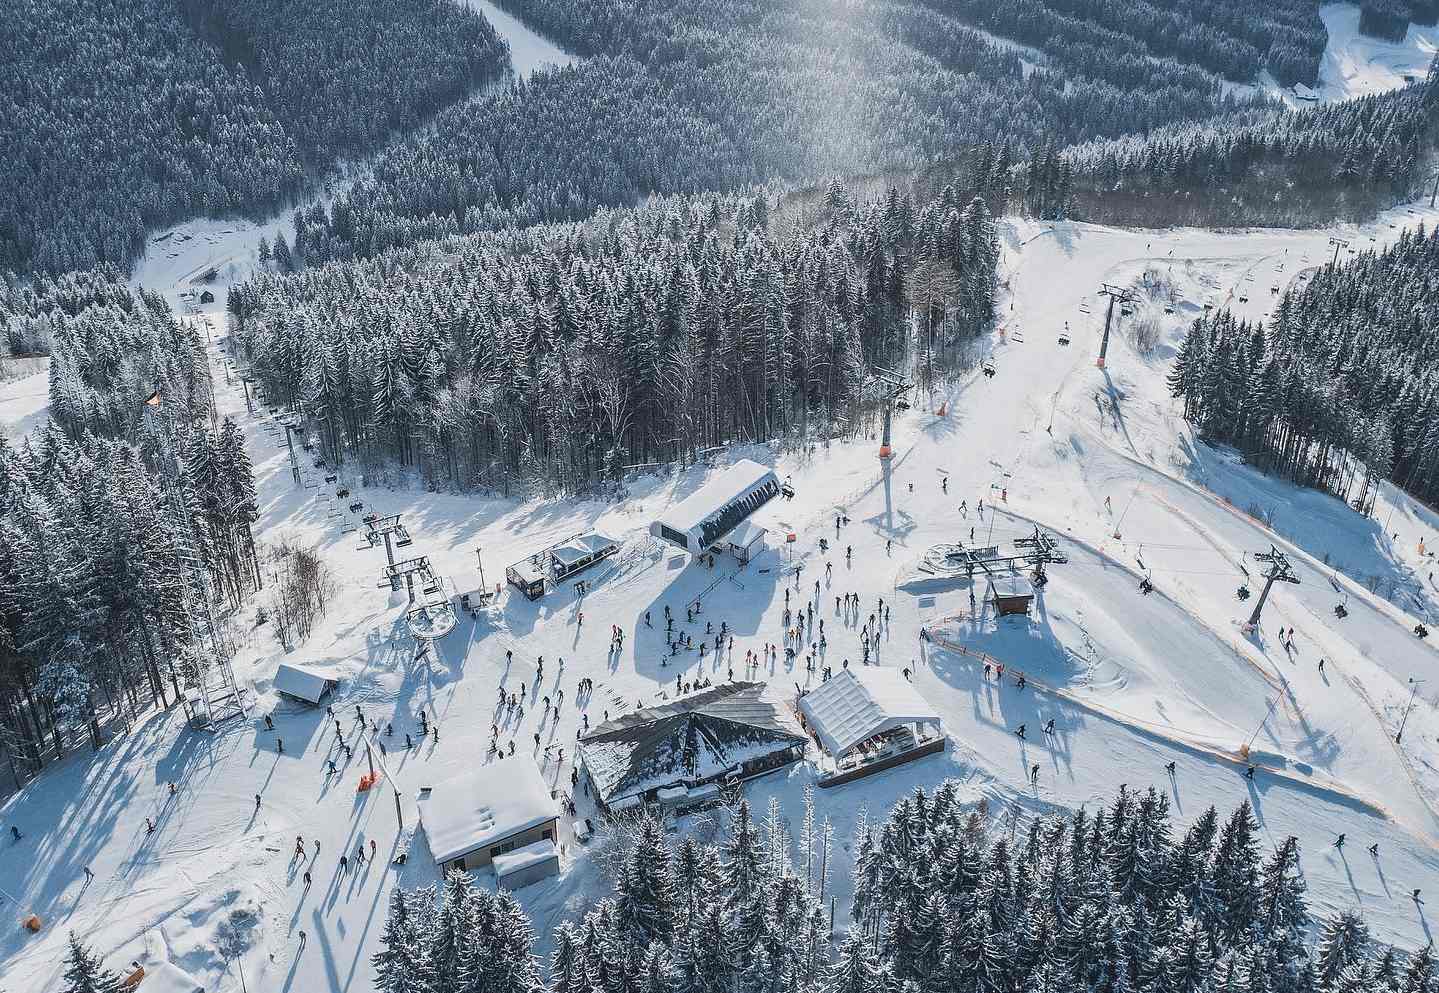 La guerra no impide que Ucrania proyecte construir tres nuevas estaciones de esquí